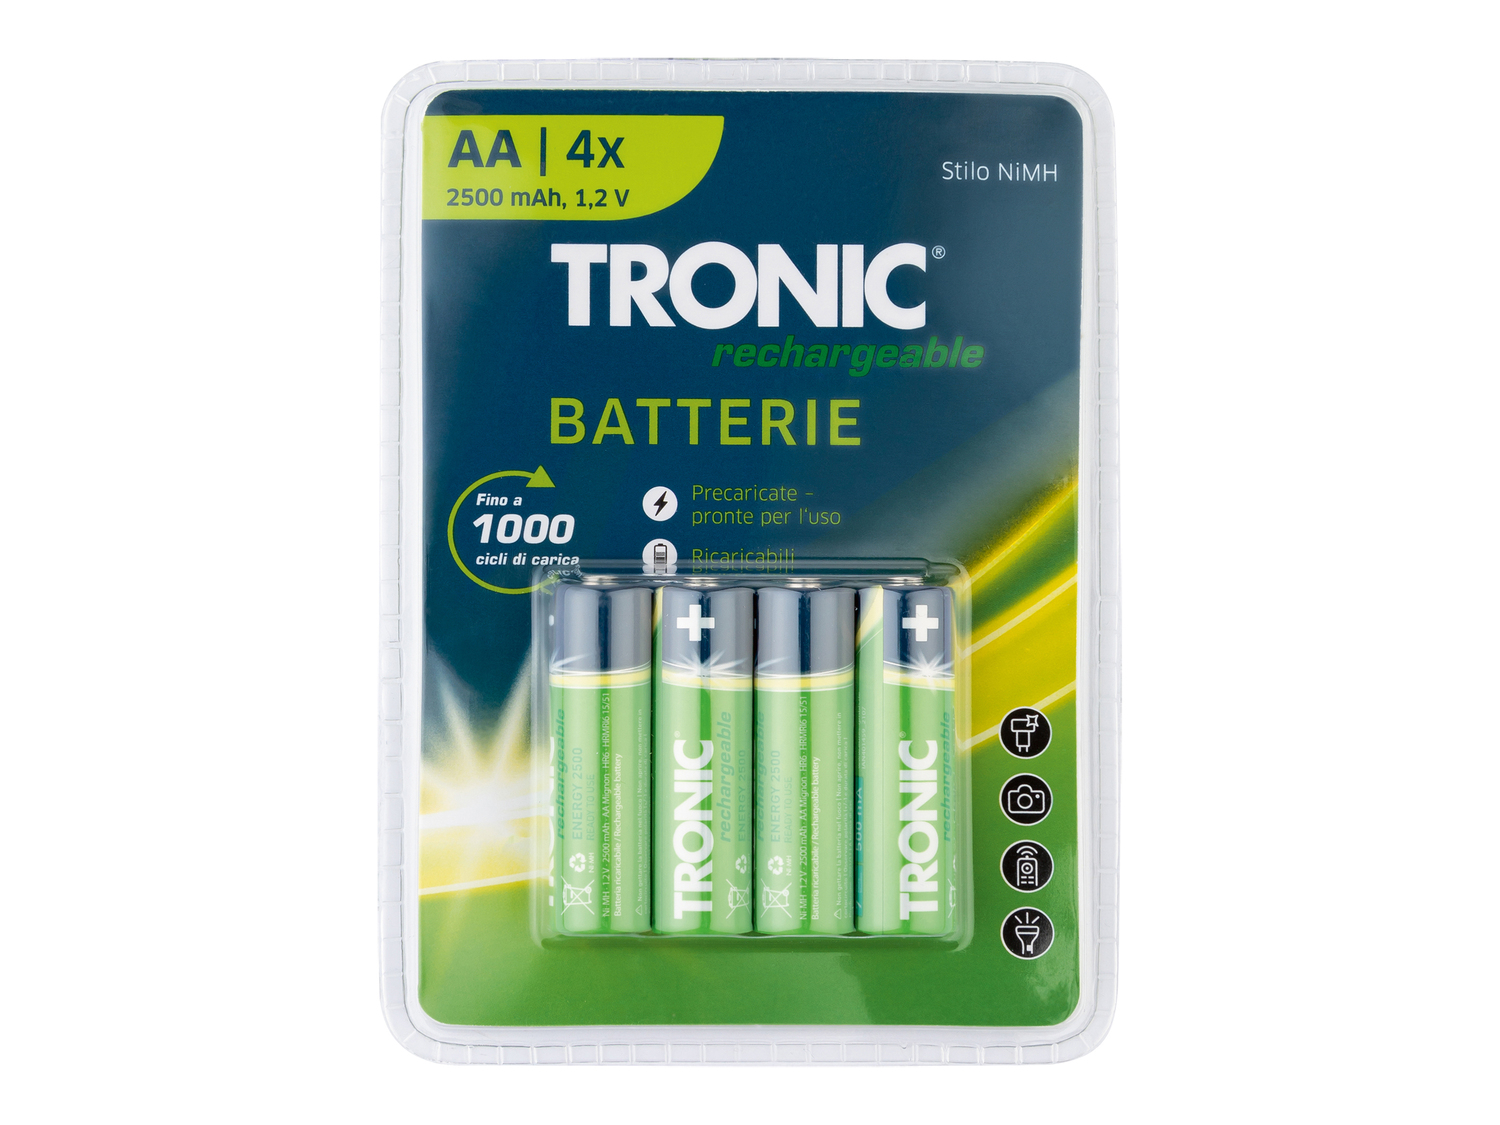 Batterie ricaricabili Tronic, prezzo 4.99 &#8364; 
4 pezzi 
- AA o AAA
Caratteristiche
 ...